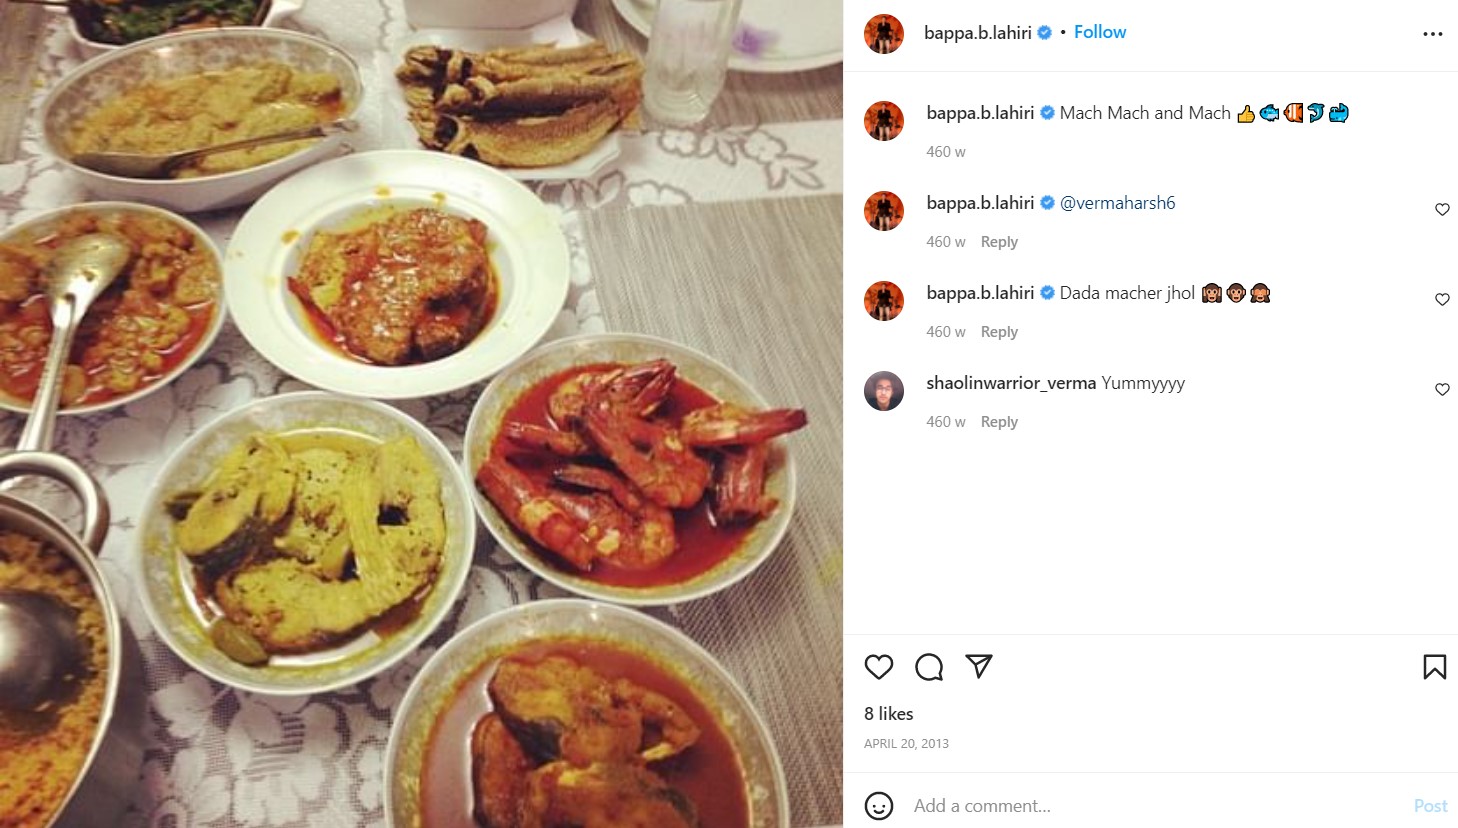 बप्पा लाहिड़ी का इंस्टाग्राम पोस्ट उनके खाने की आदतों के बारे में